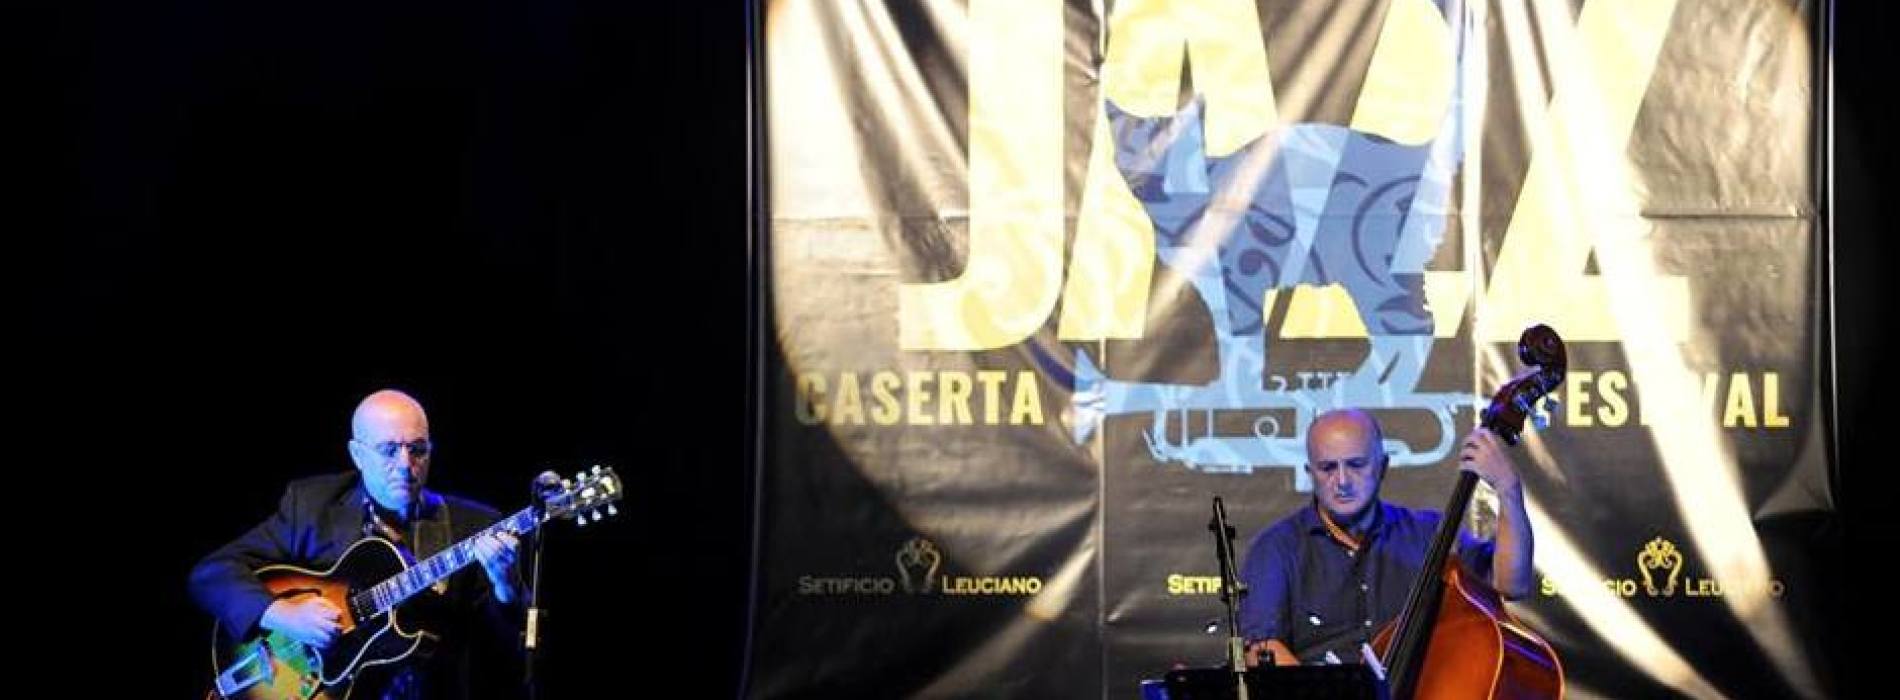 Piove sul Caserta Jazz Festival, rinviati gli ultimi due concerti